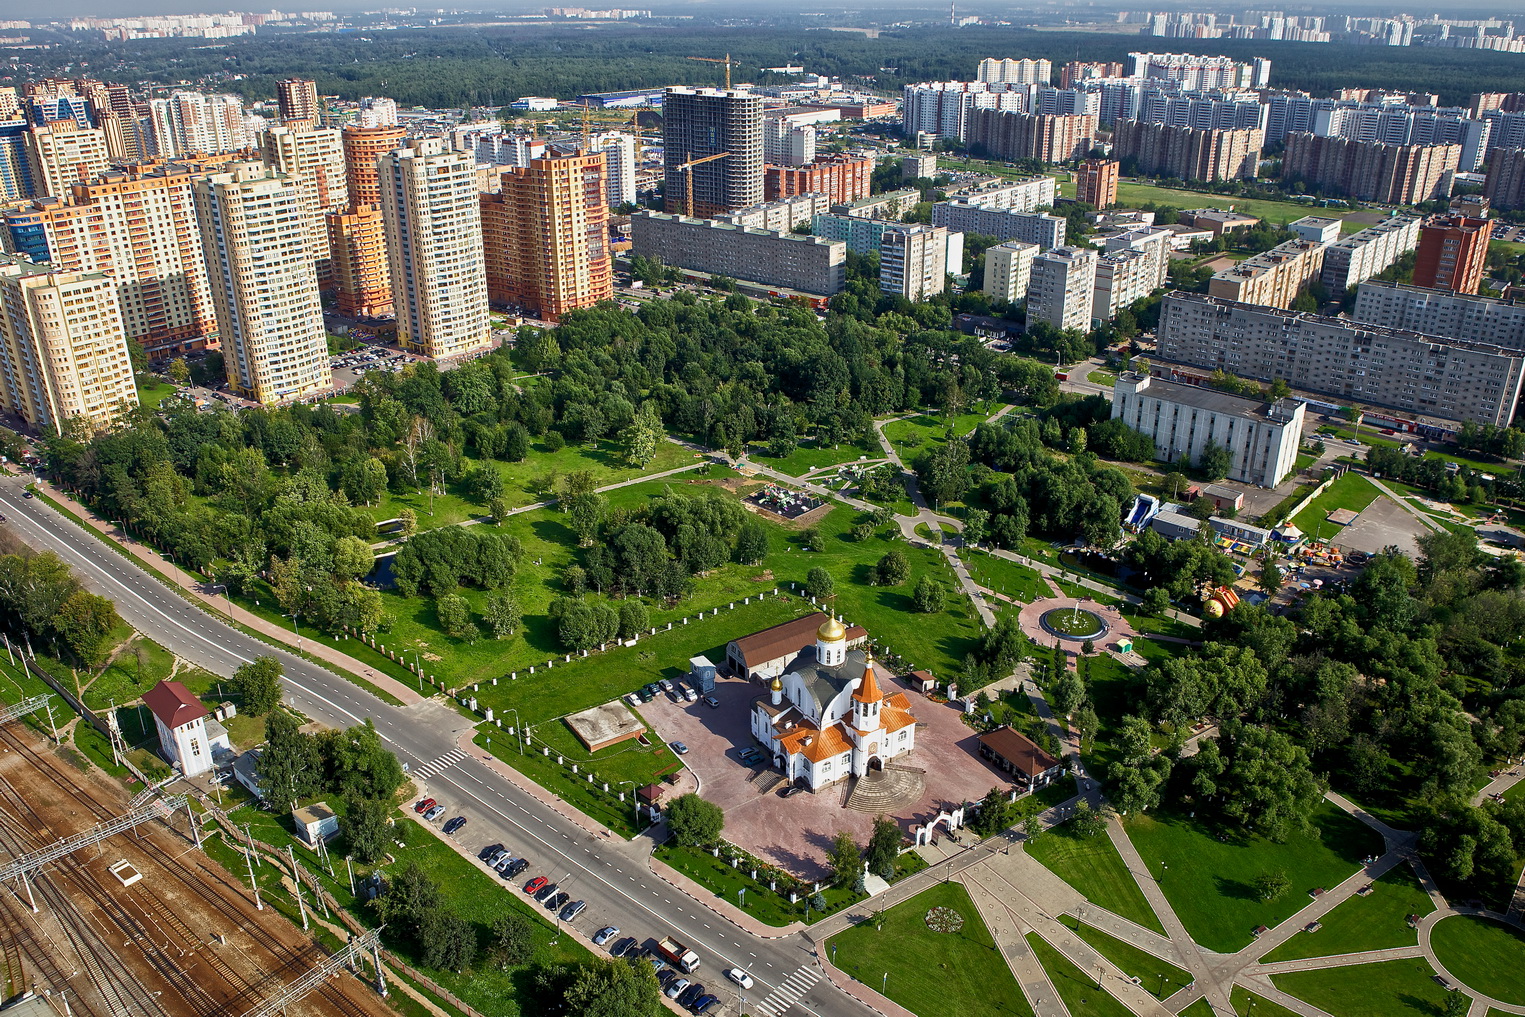 реутов центральный городской парк